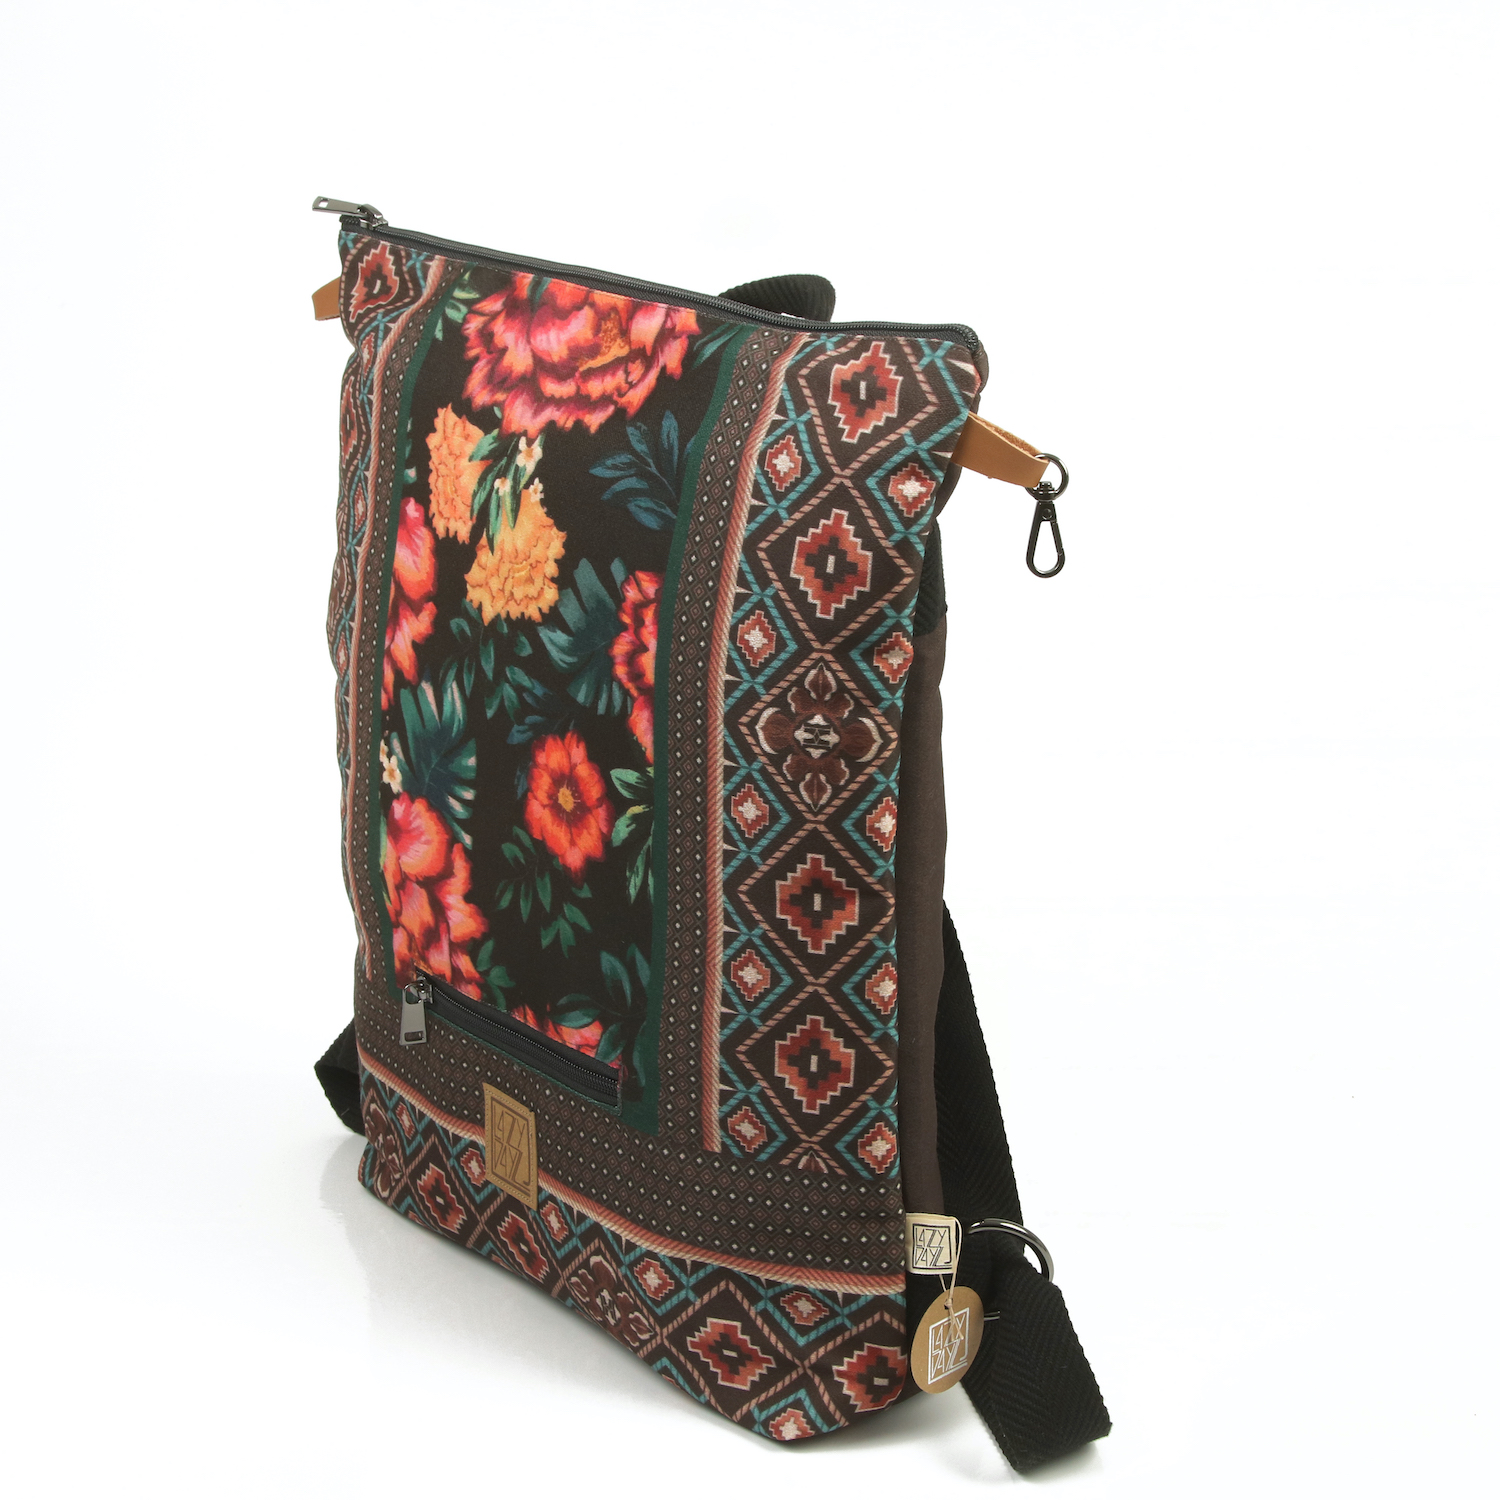 LazyDayz Designs Backpack γυναικείος σάκος πλάτης χειροποίητος bb0506b